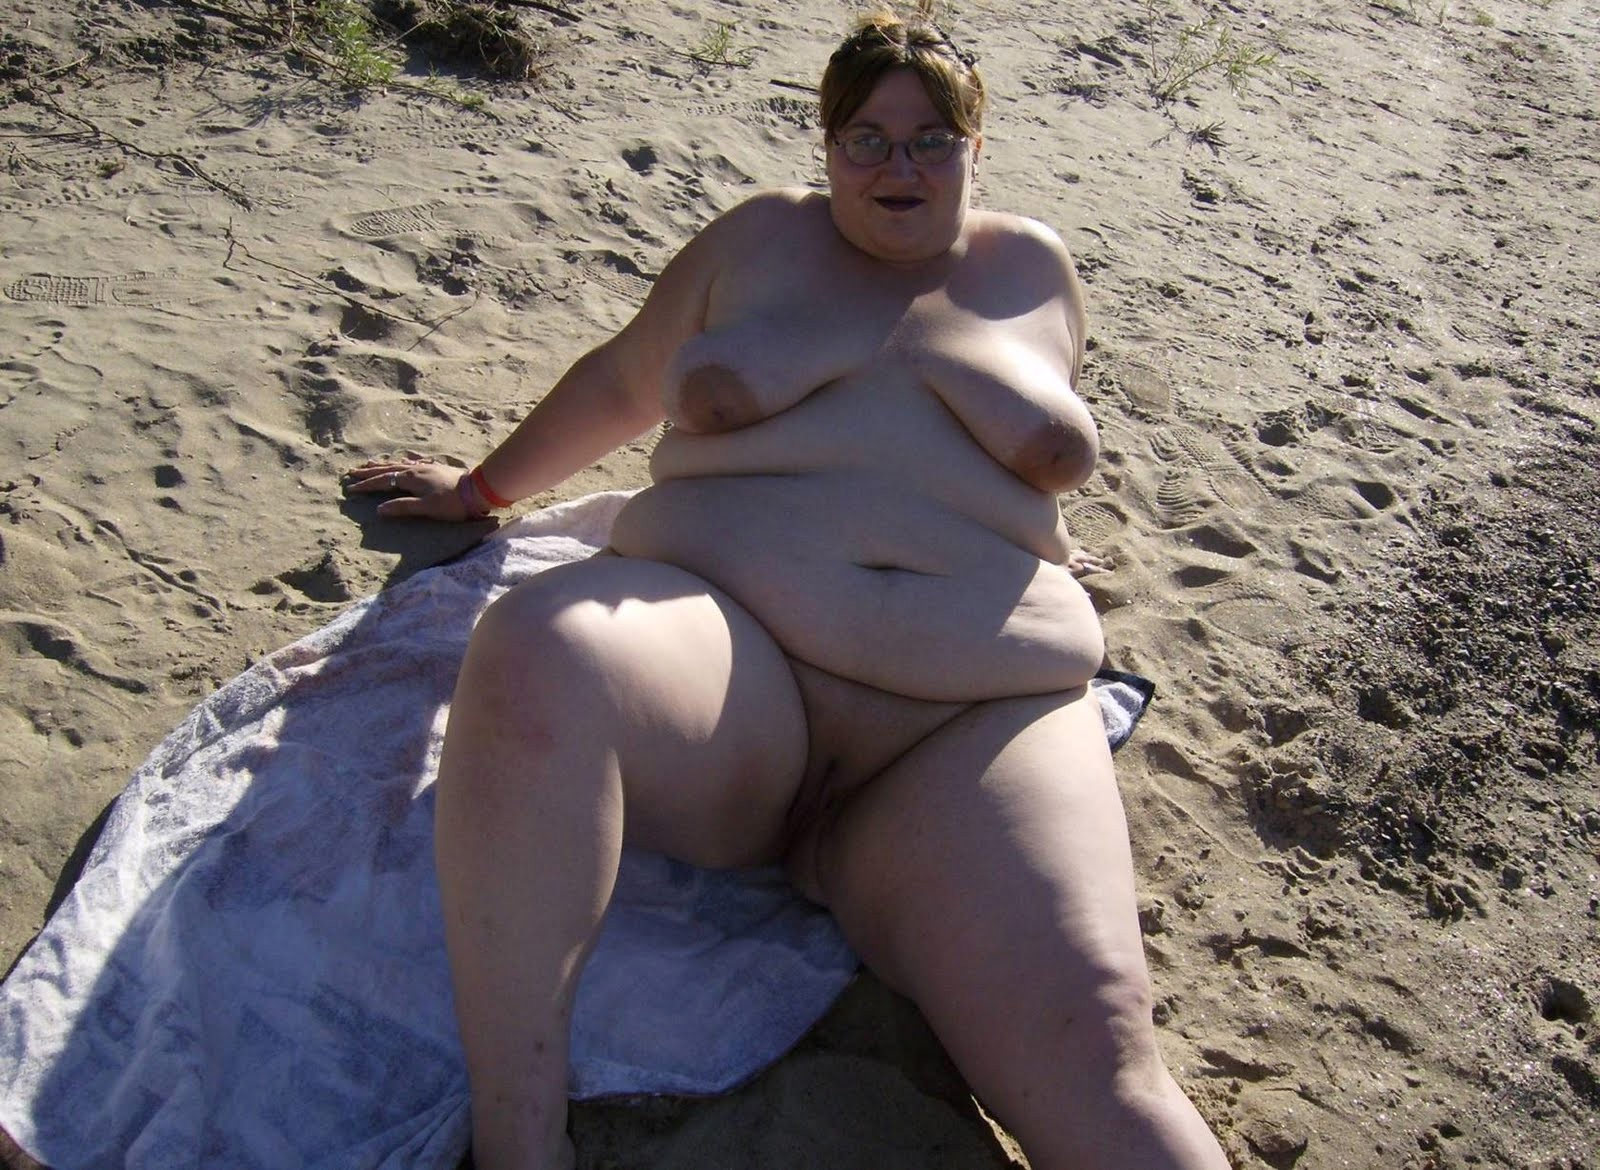 Plumper Sunbathing - Chubby mature ladies sunbathing on a nudist beach